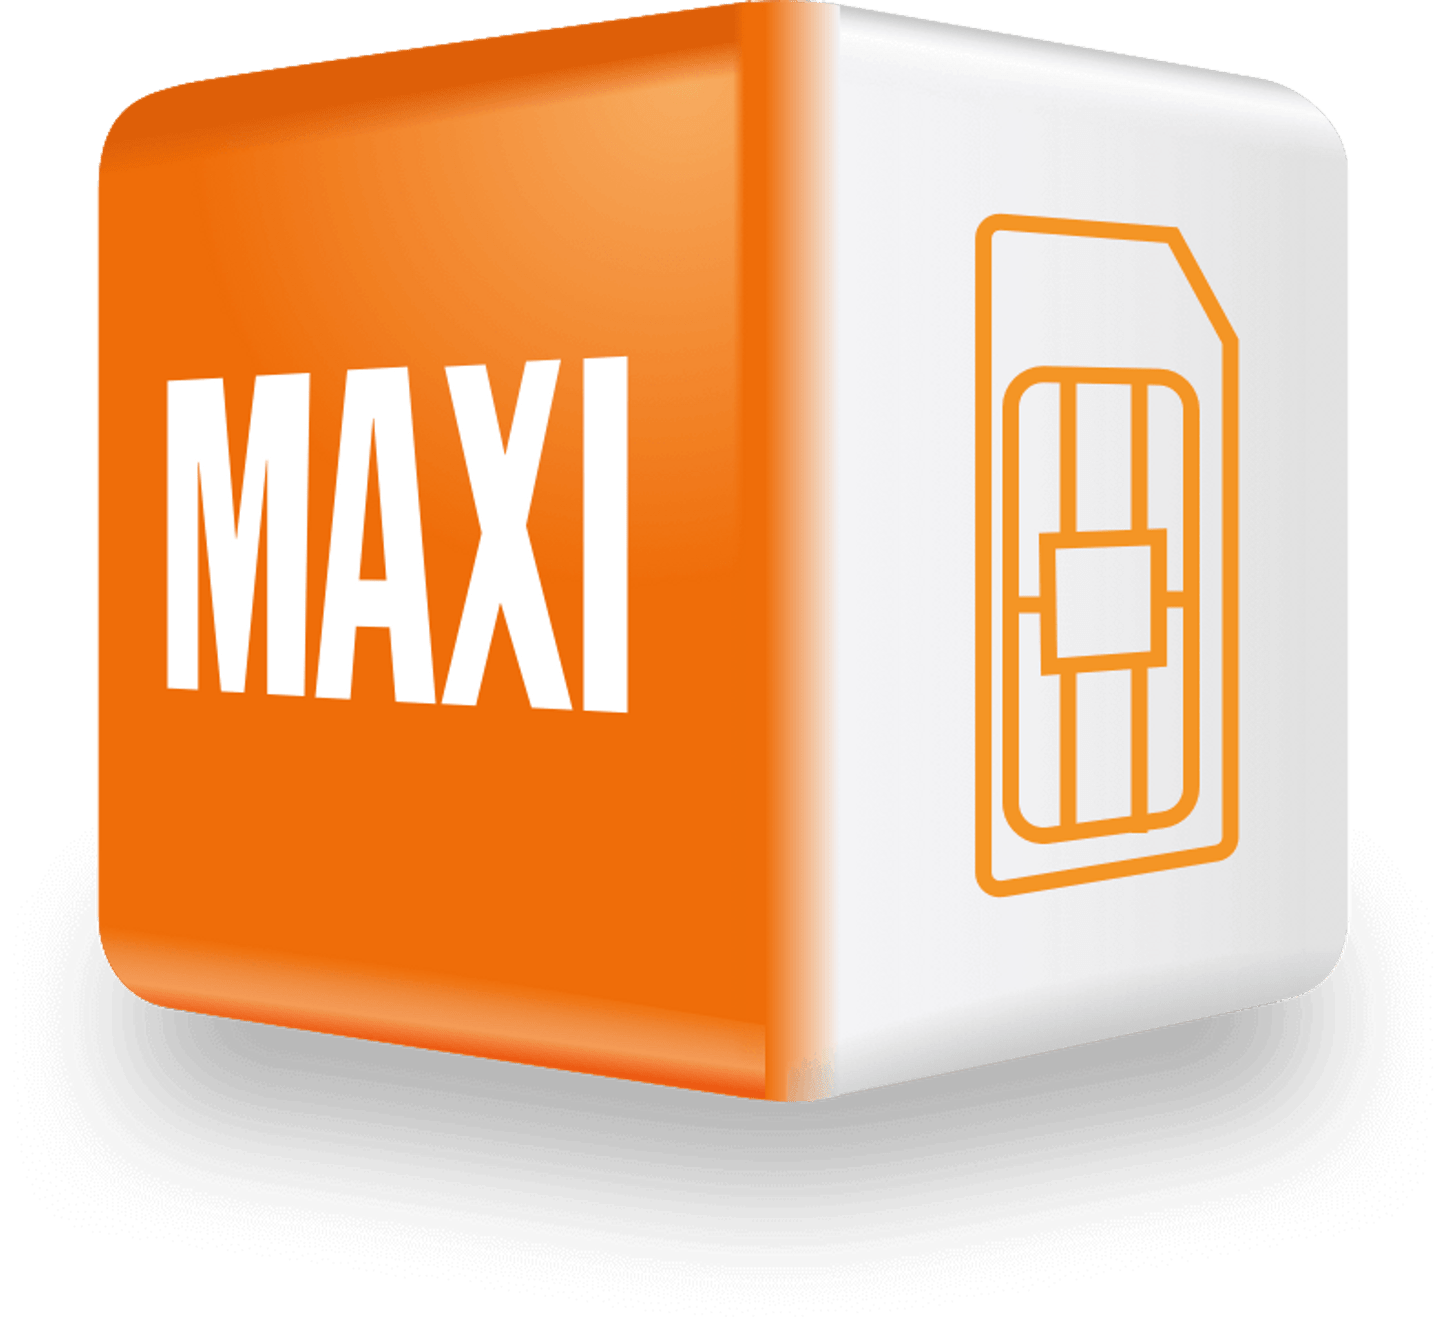 Cube Maxi